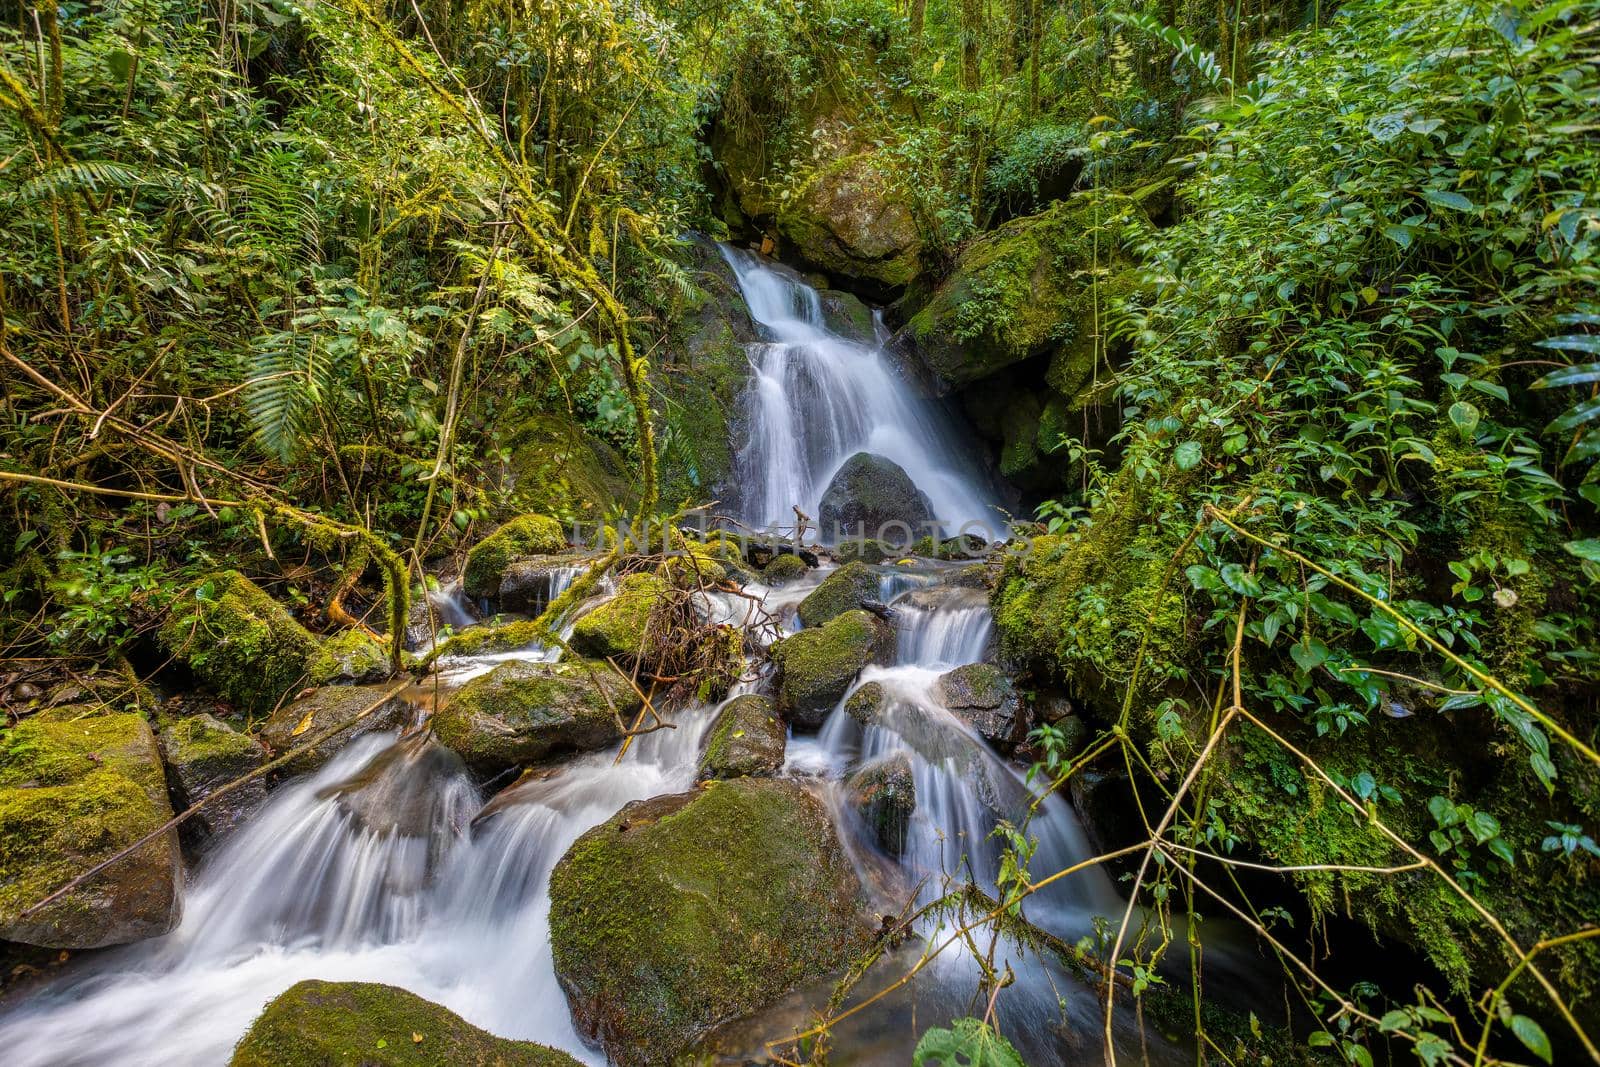 Wild mountain river. San Gerardo de Dota, Costa Rica. by artush